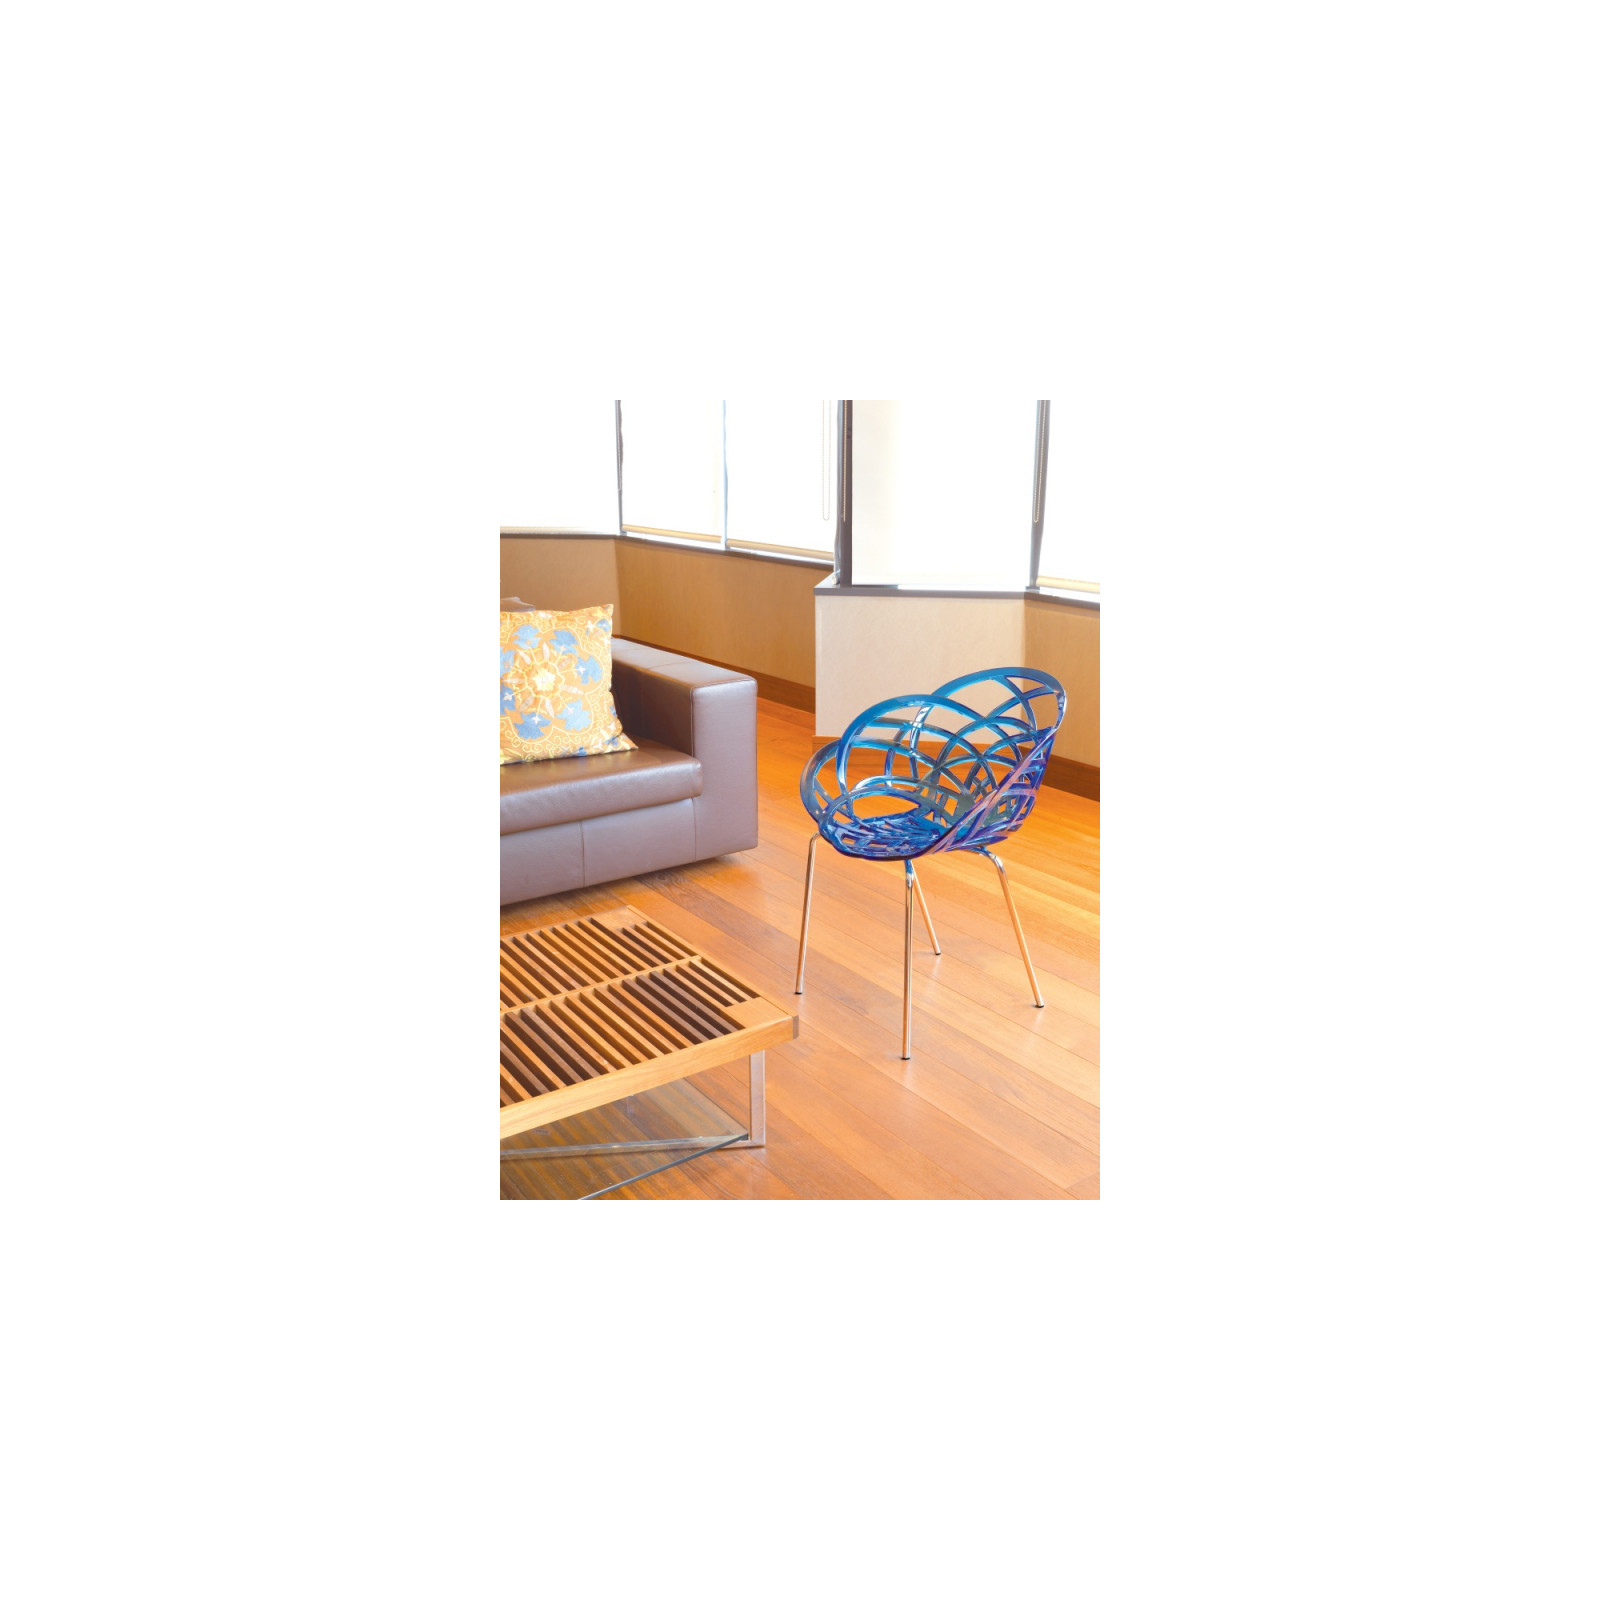 Кухонный стул PAPATYA flora ml сидение прозрачно-пурпурное, цвет 28, хромированные (2960) изображение 2